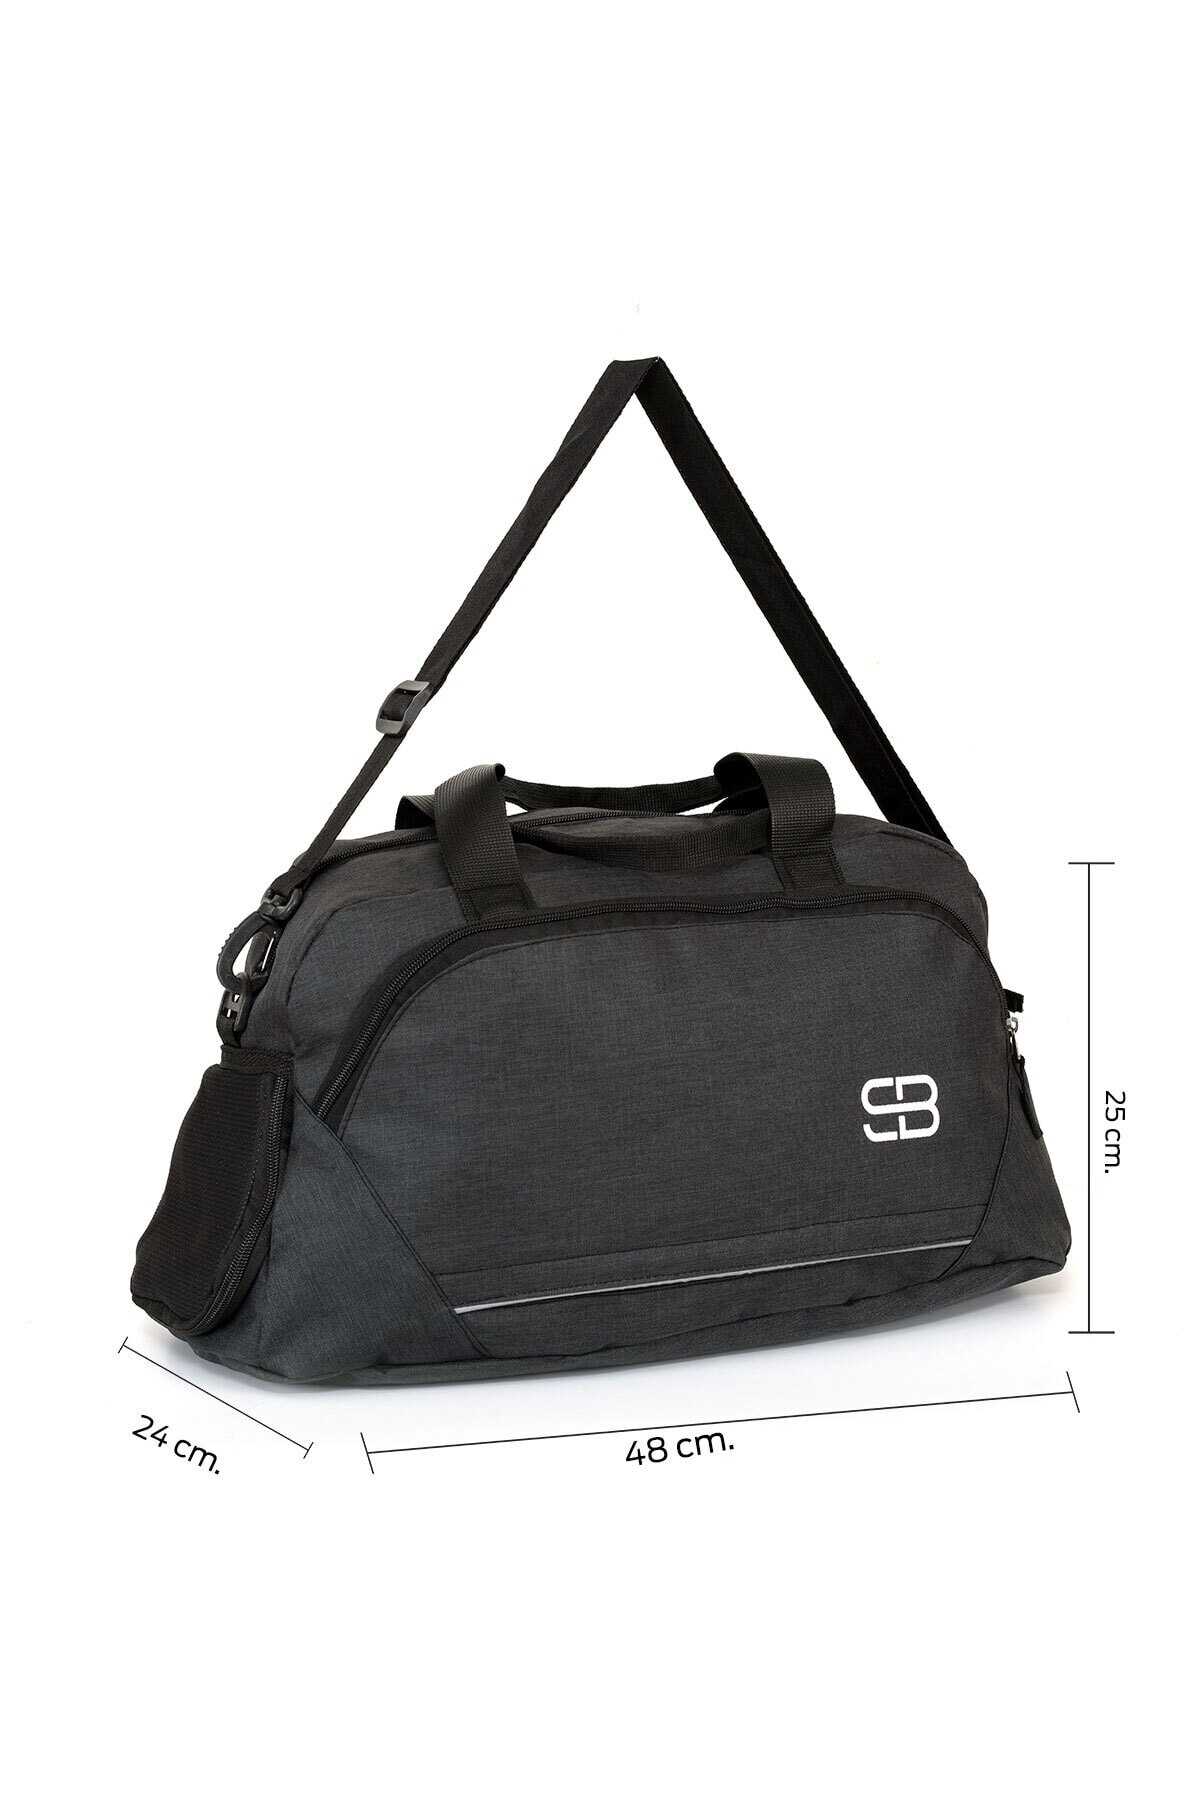 کیف مردانه ورزشی طرح دار مشکی برند Solo Bag